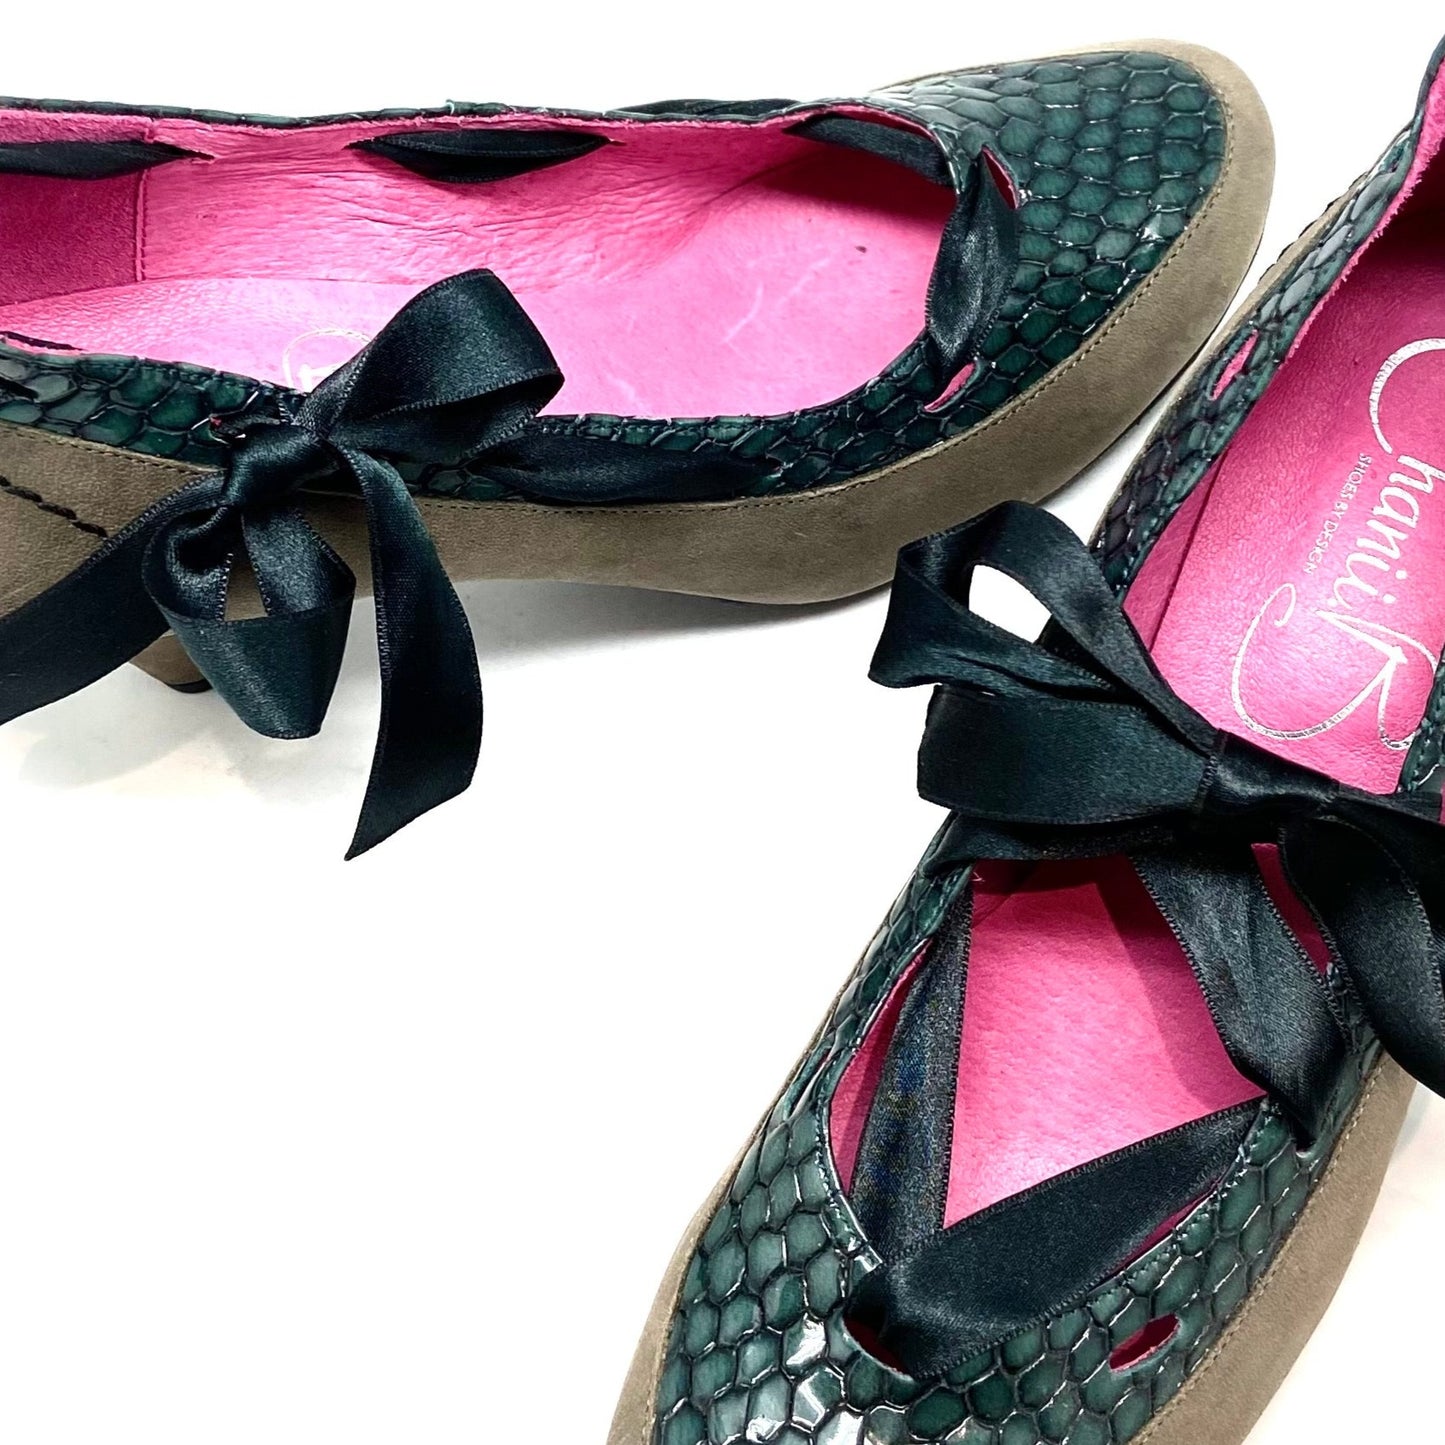 Treat -Grey teal low heel shoe- last pair 37